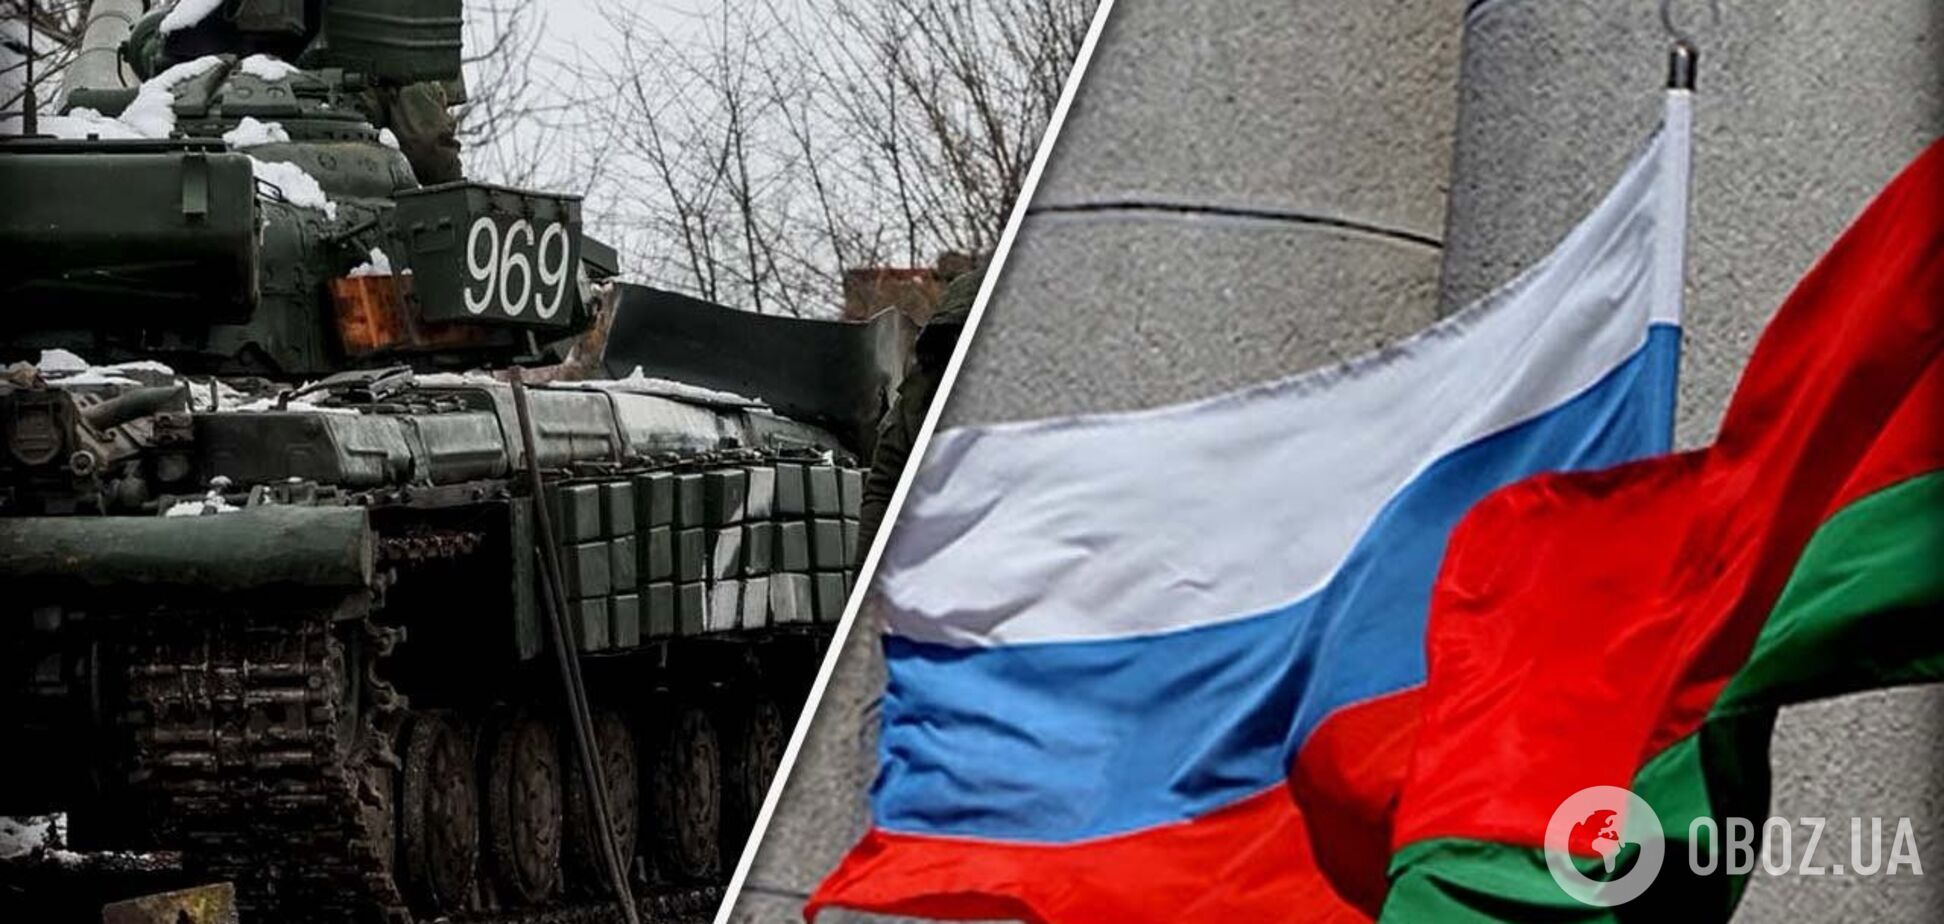 У Білорусі відкриті тили: де розміщено бази з військовим арсеналом для РФ